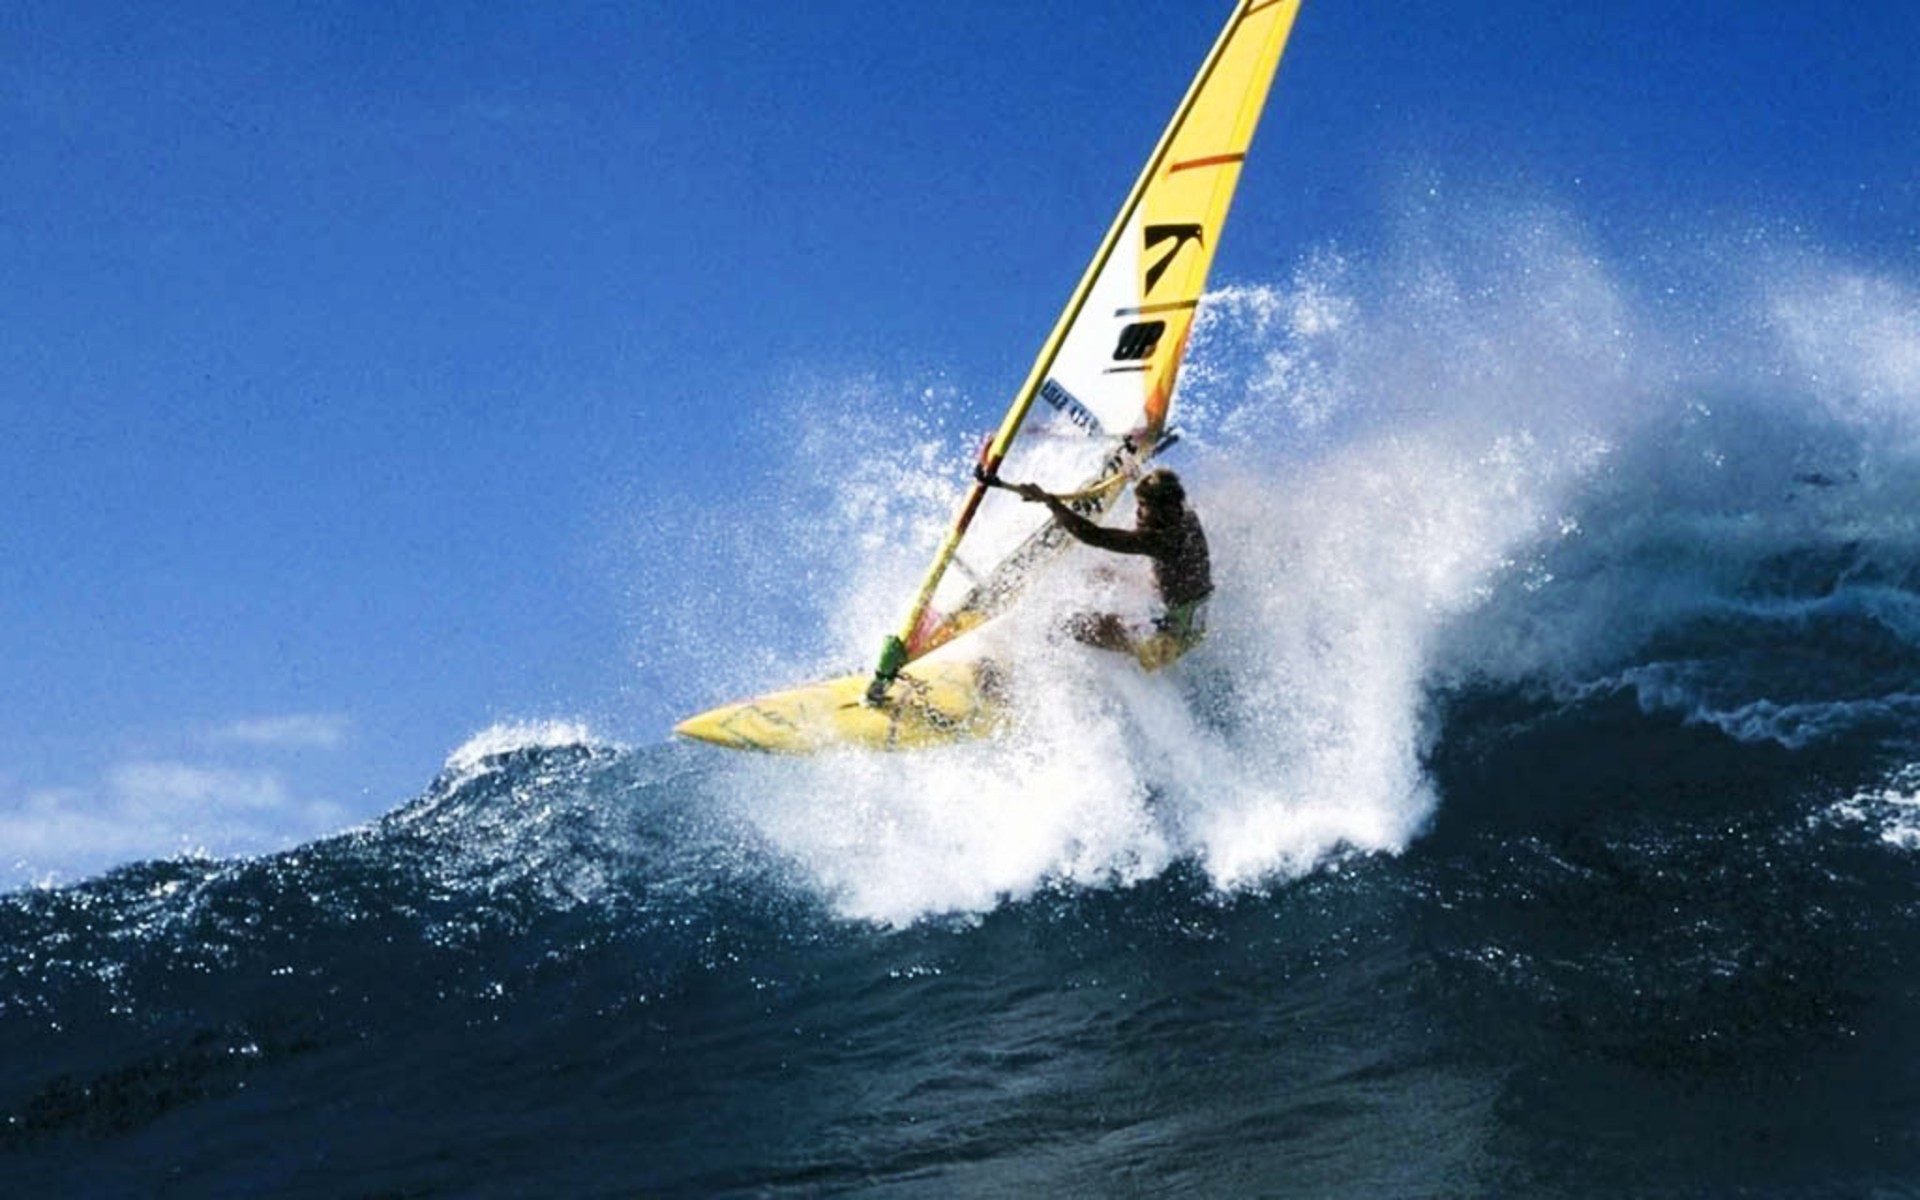 Windsurfing Wallpaper